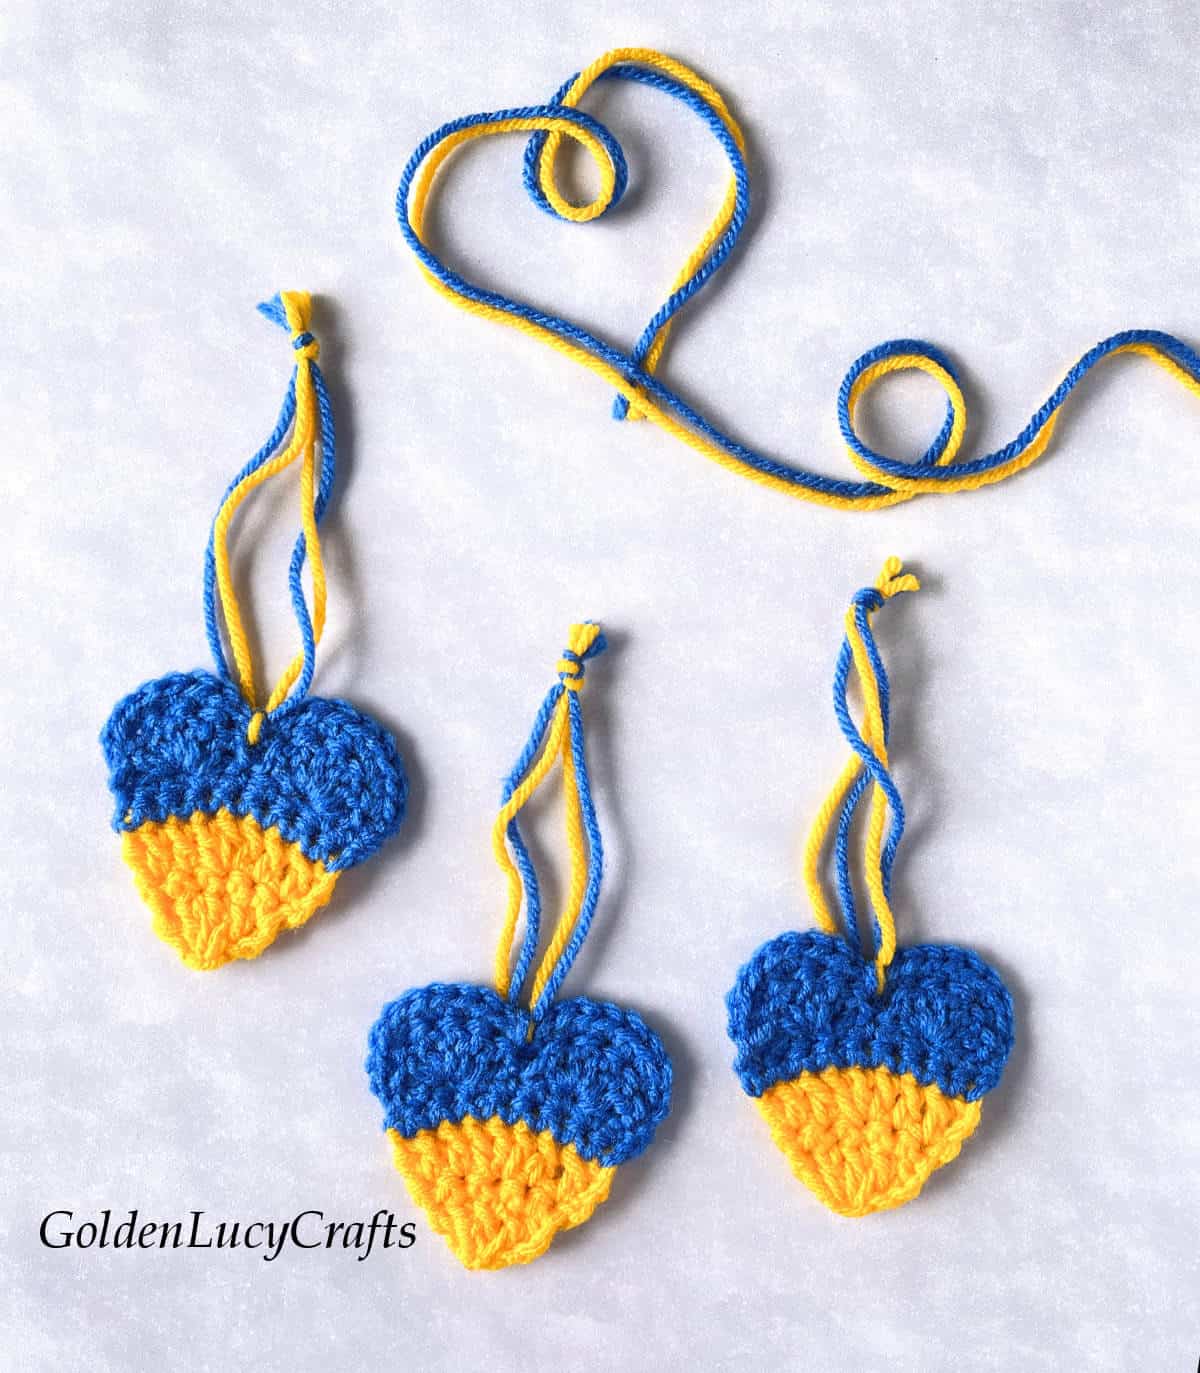 Three crocheted yellow blue hearts.